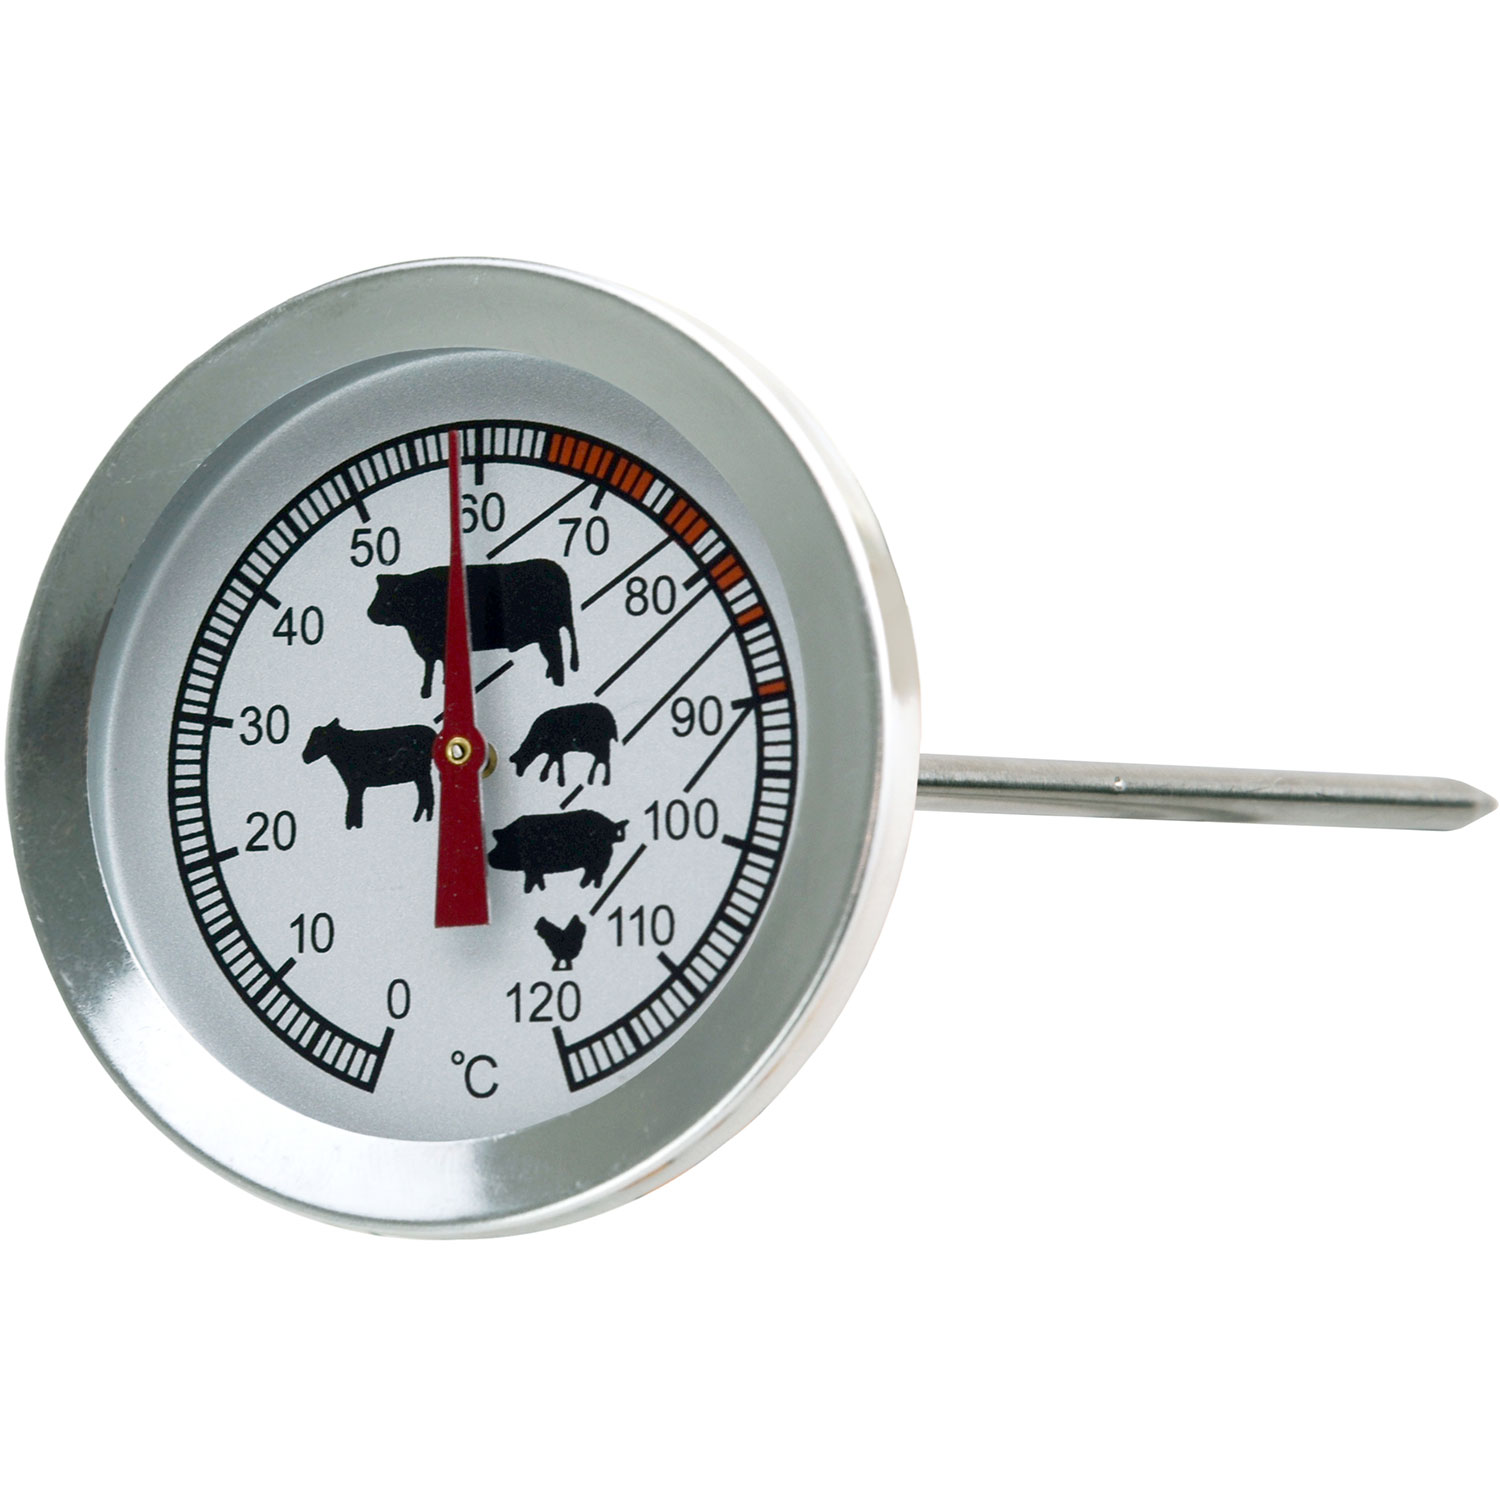 https://api-prod.royaldesign.se/api/products/image/11/eti-meat-thermometer-stainless-steel-0